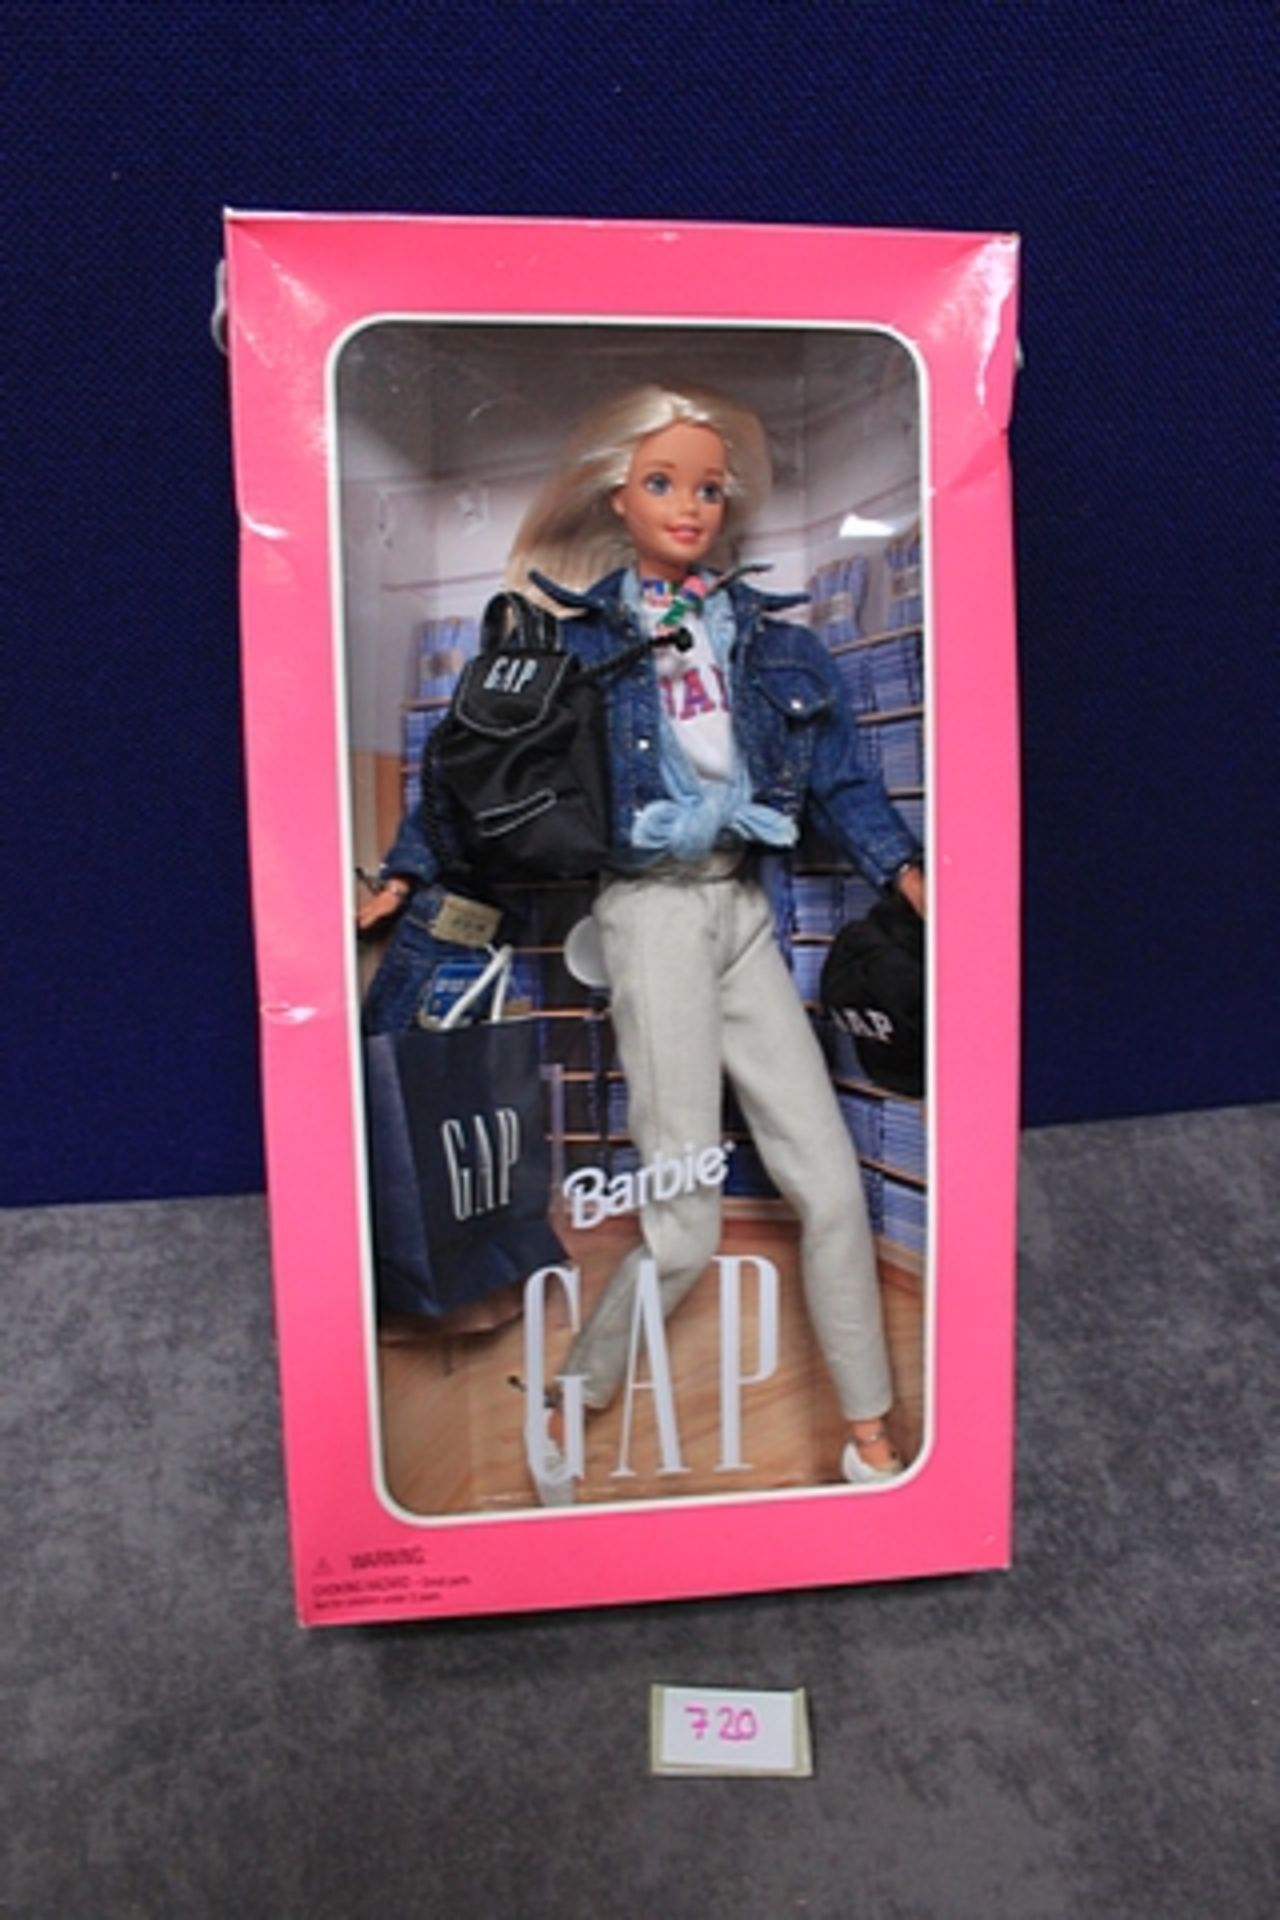 Mattel # 16449 GAP Barbie In Box - Image 2 of 2